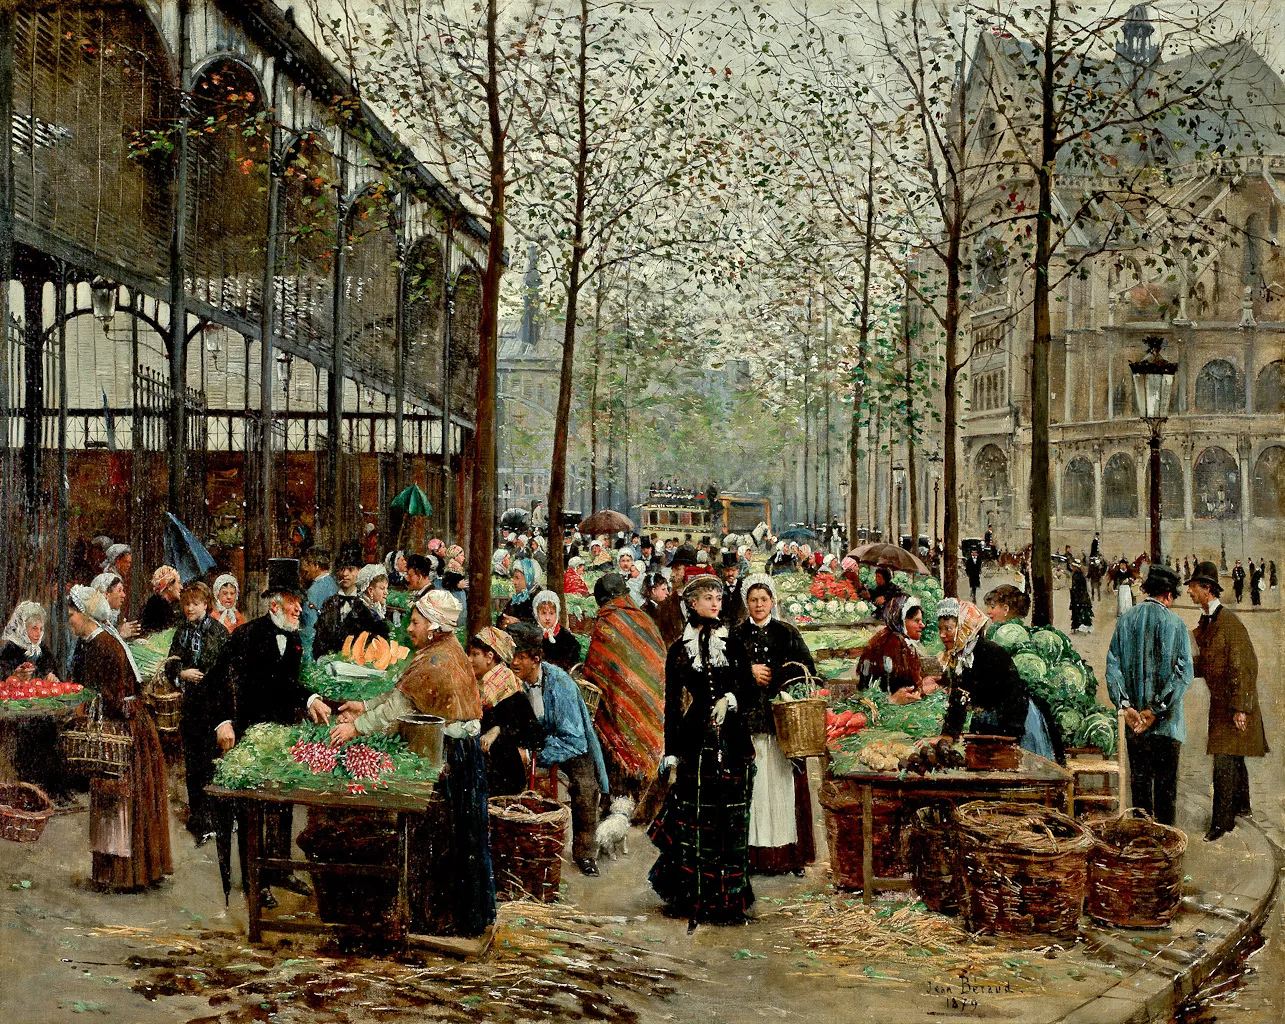 Jean Béraud, Les Halles, marché central de Paris